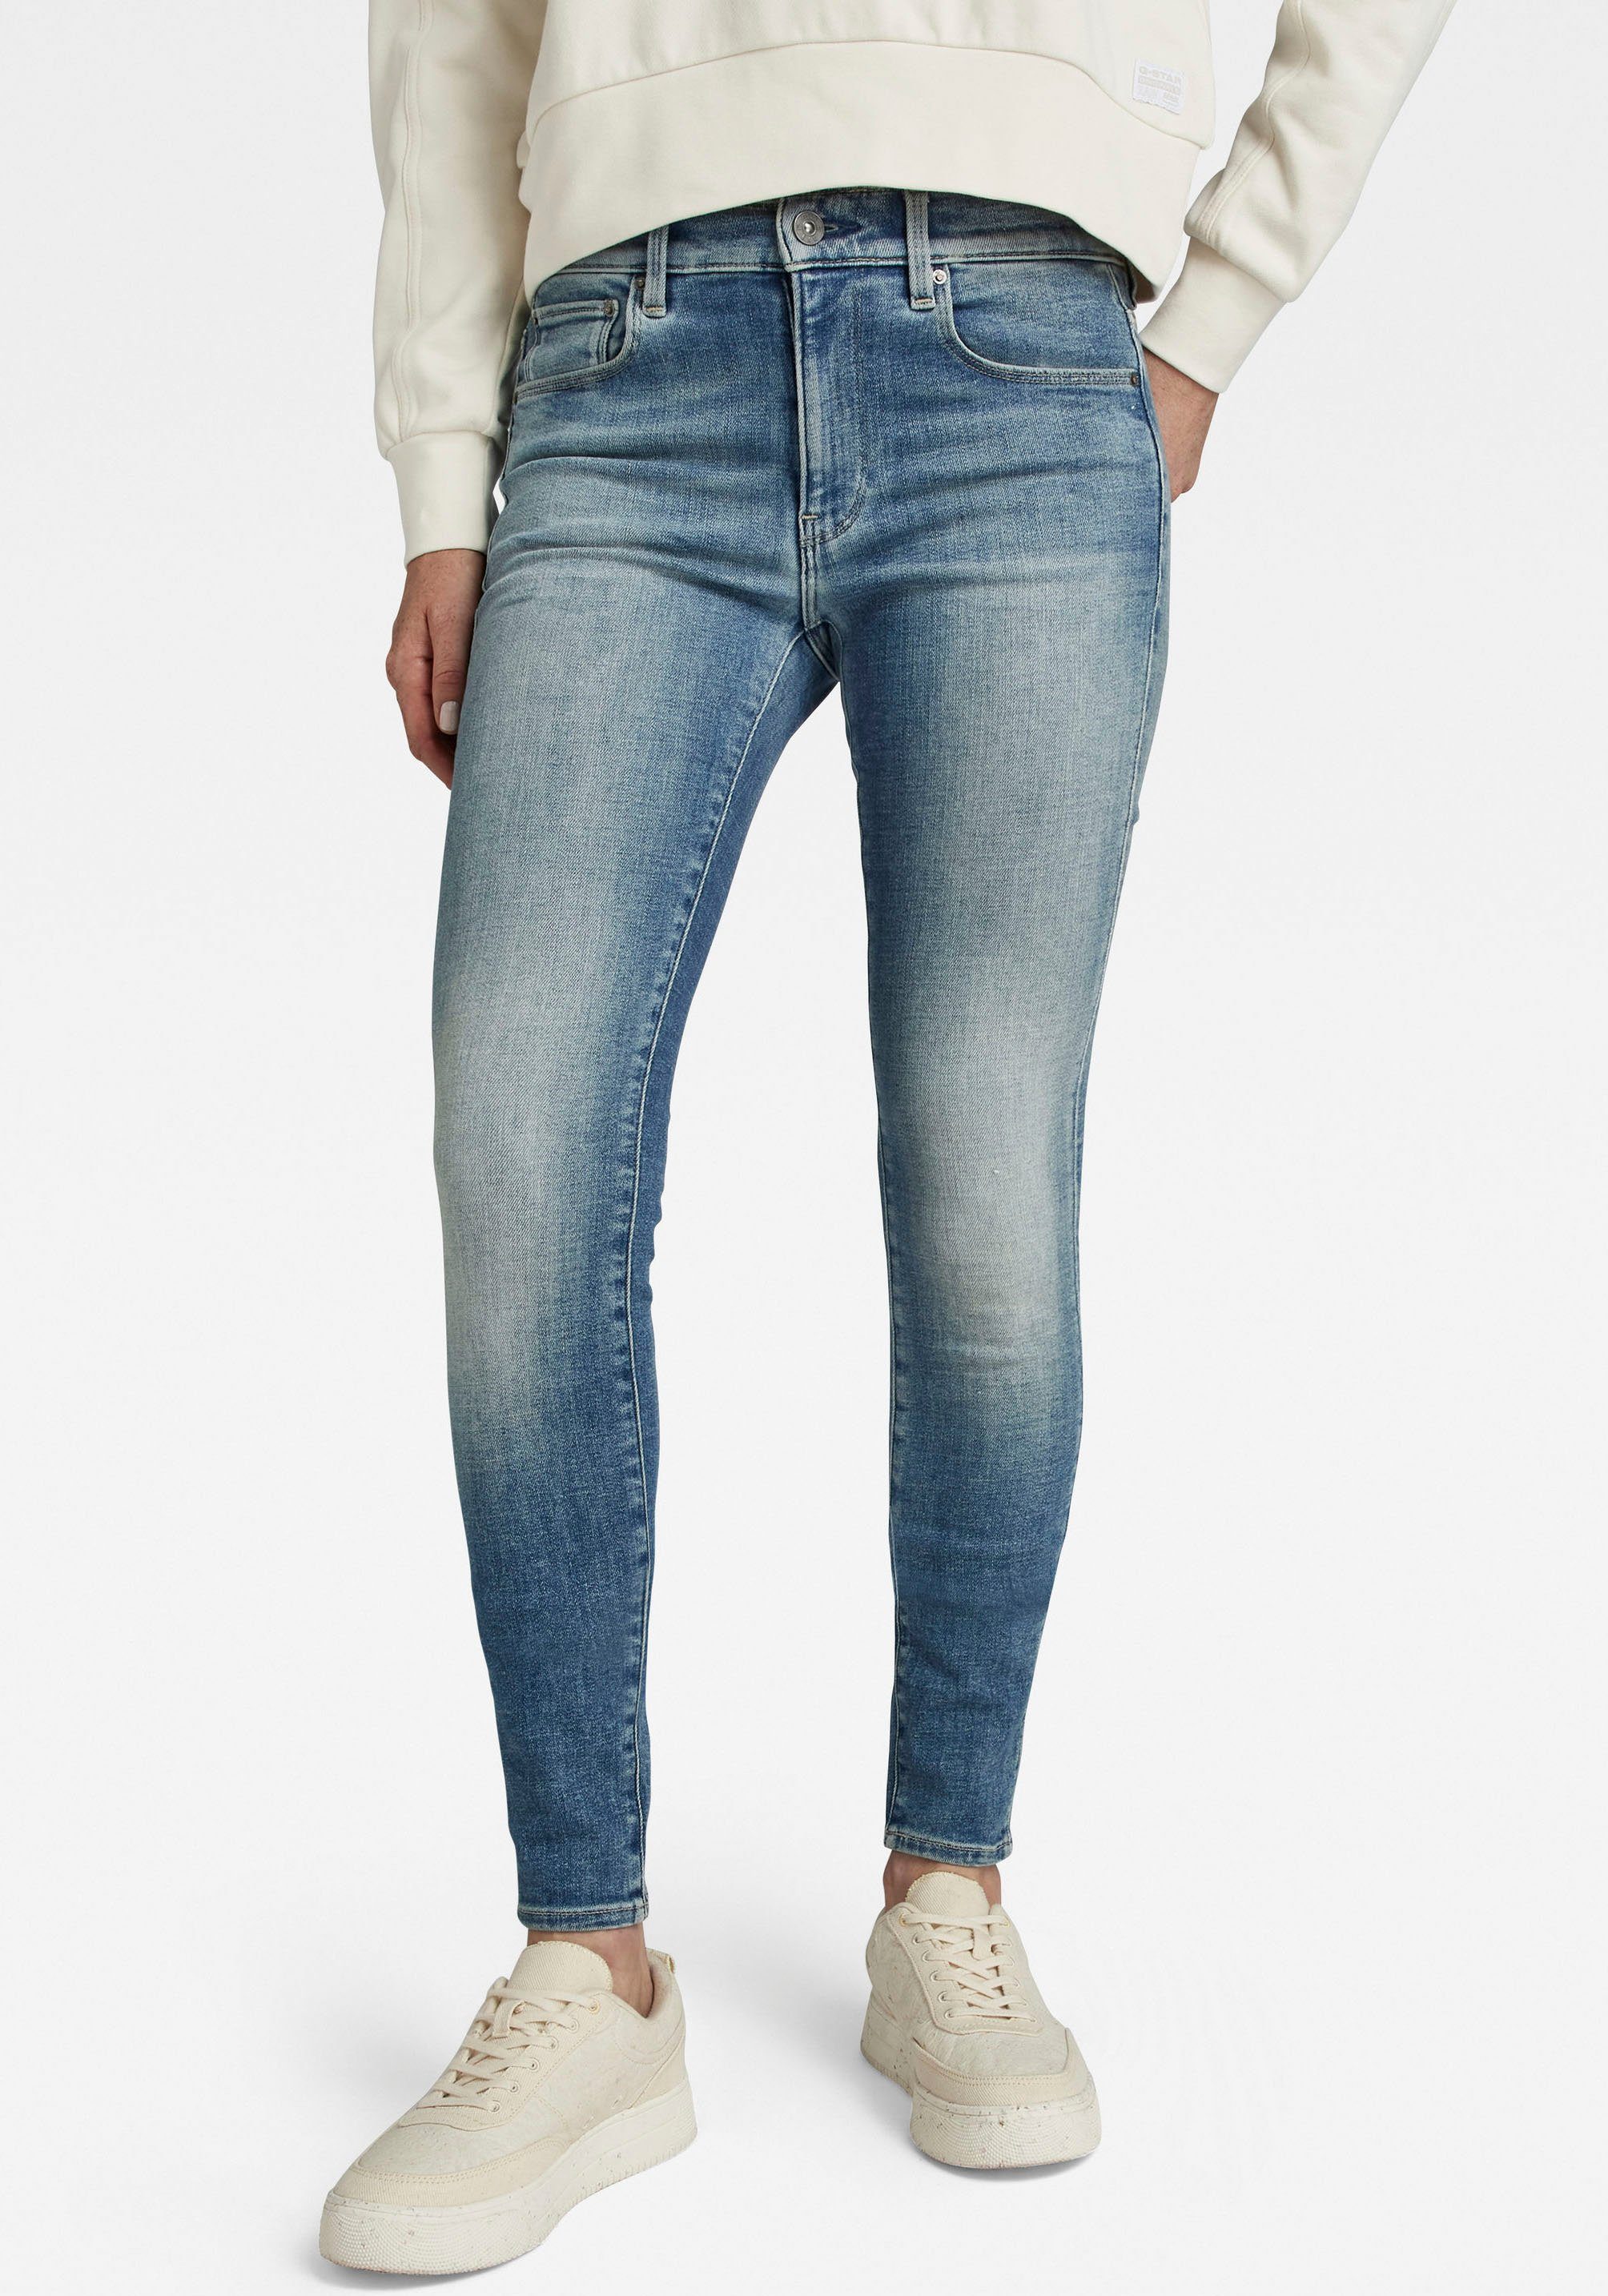 G-Star RAW 3301 high waist skinny jeans faded blue topaz